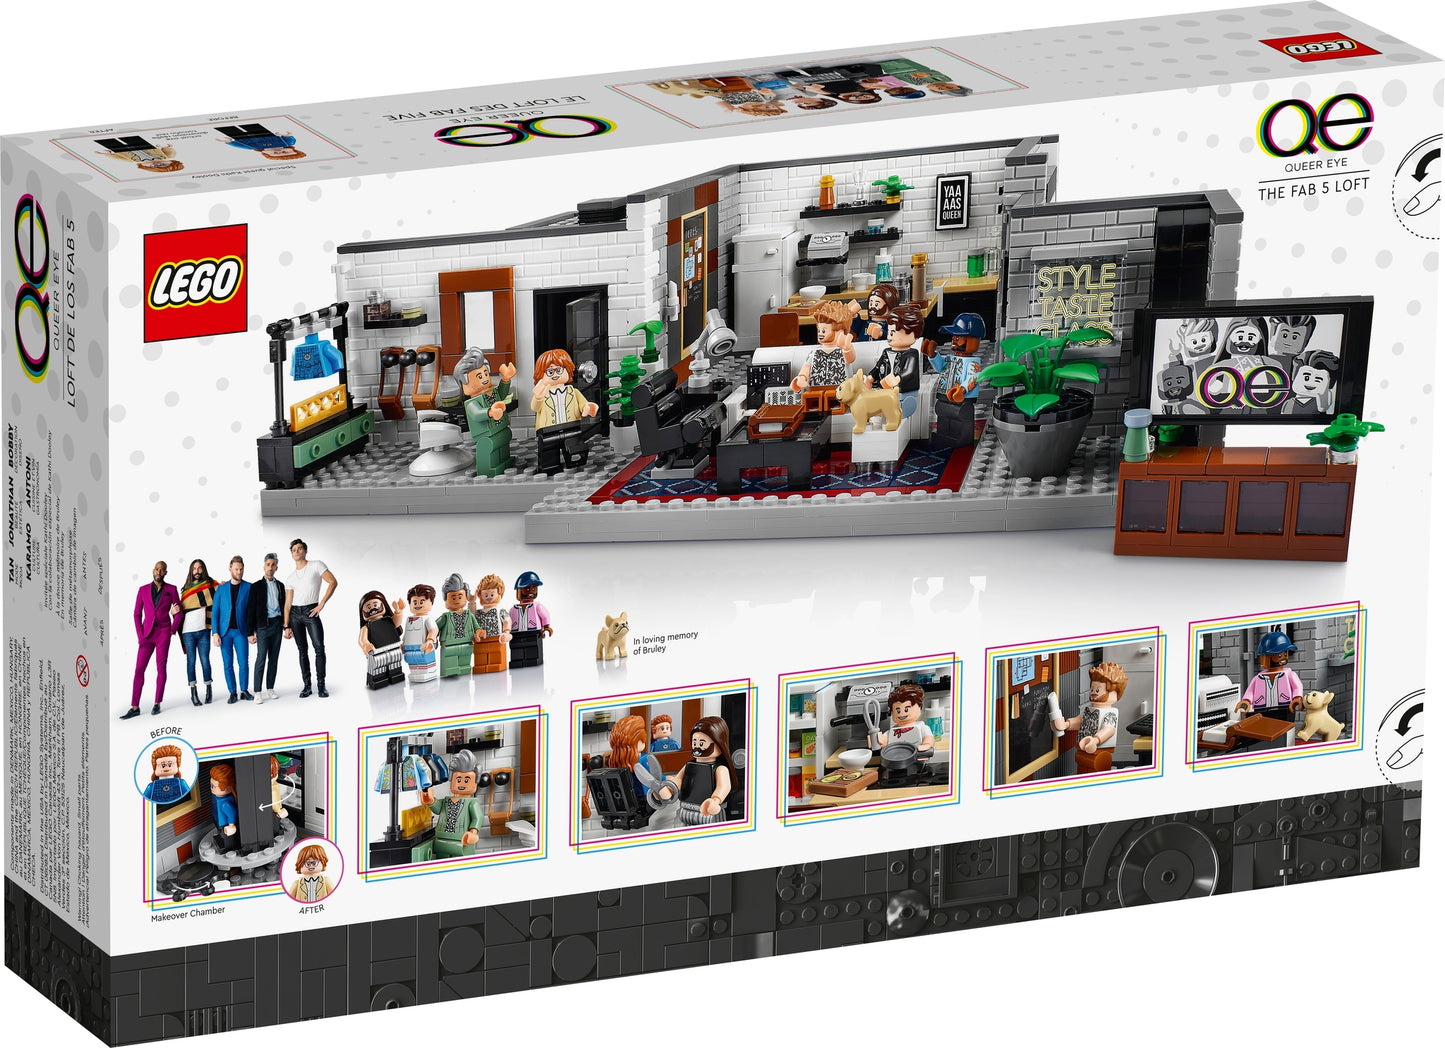 10291 LEGO Creator - Queer Eye - Loft Dei Fab Five